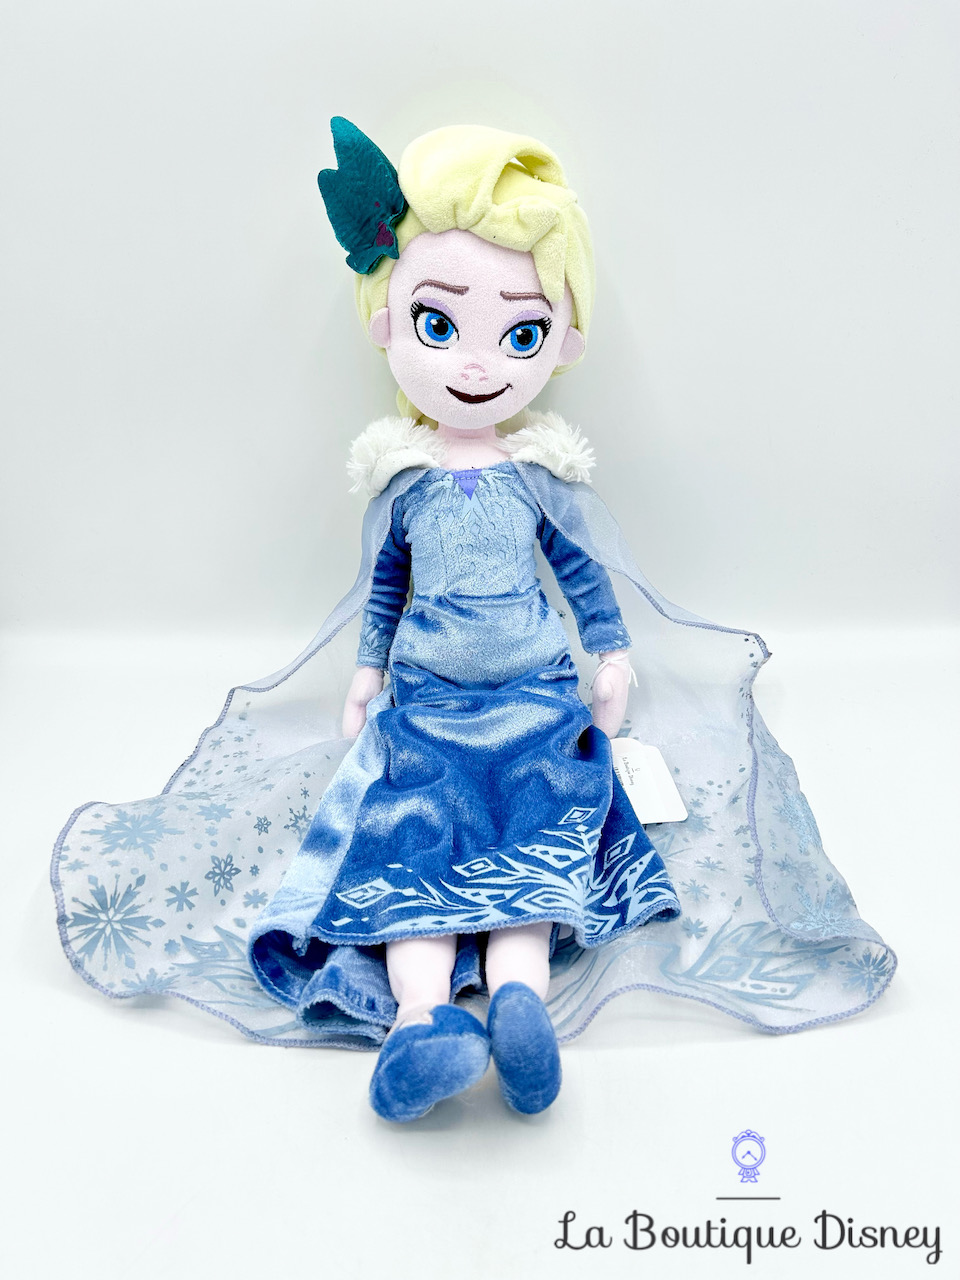 Poupée chiffon Elsa La reine des neiges Joyeuses fêtes avec Olaf Disney Store 2018 peluche Noël velours 48 cm